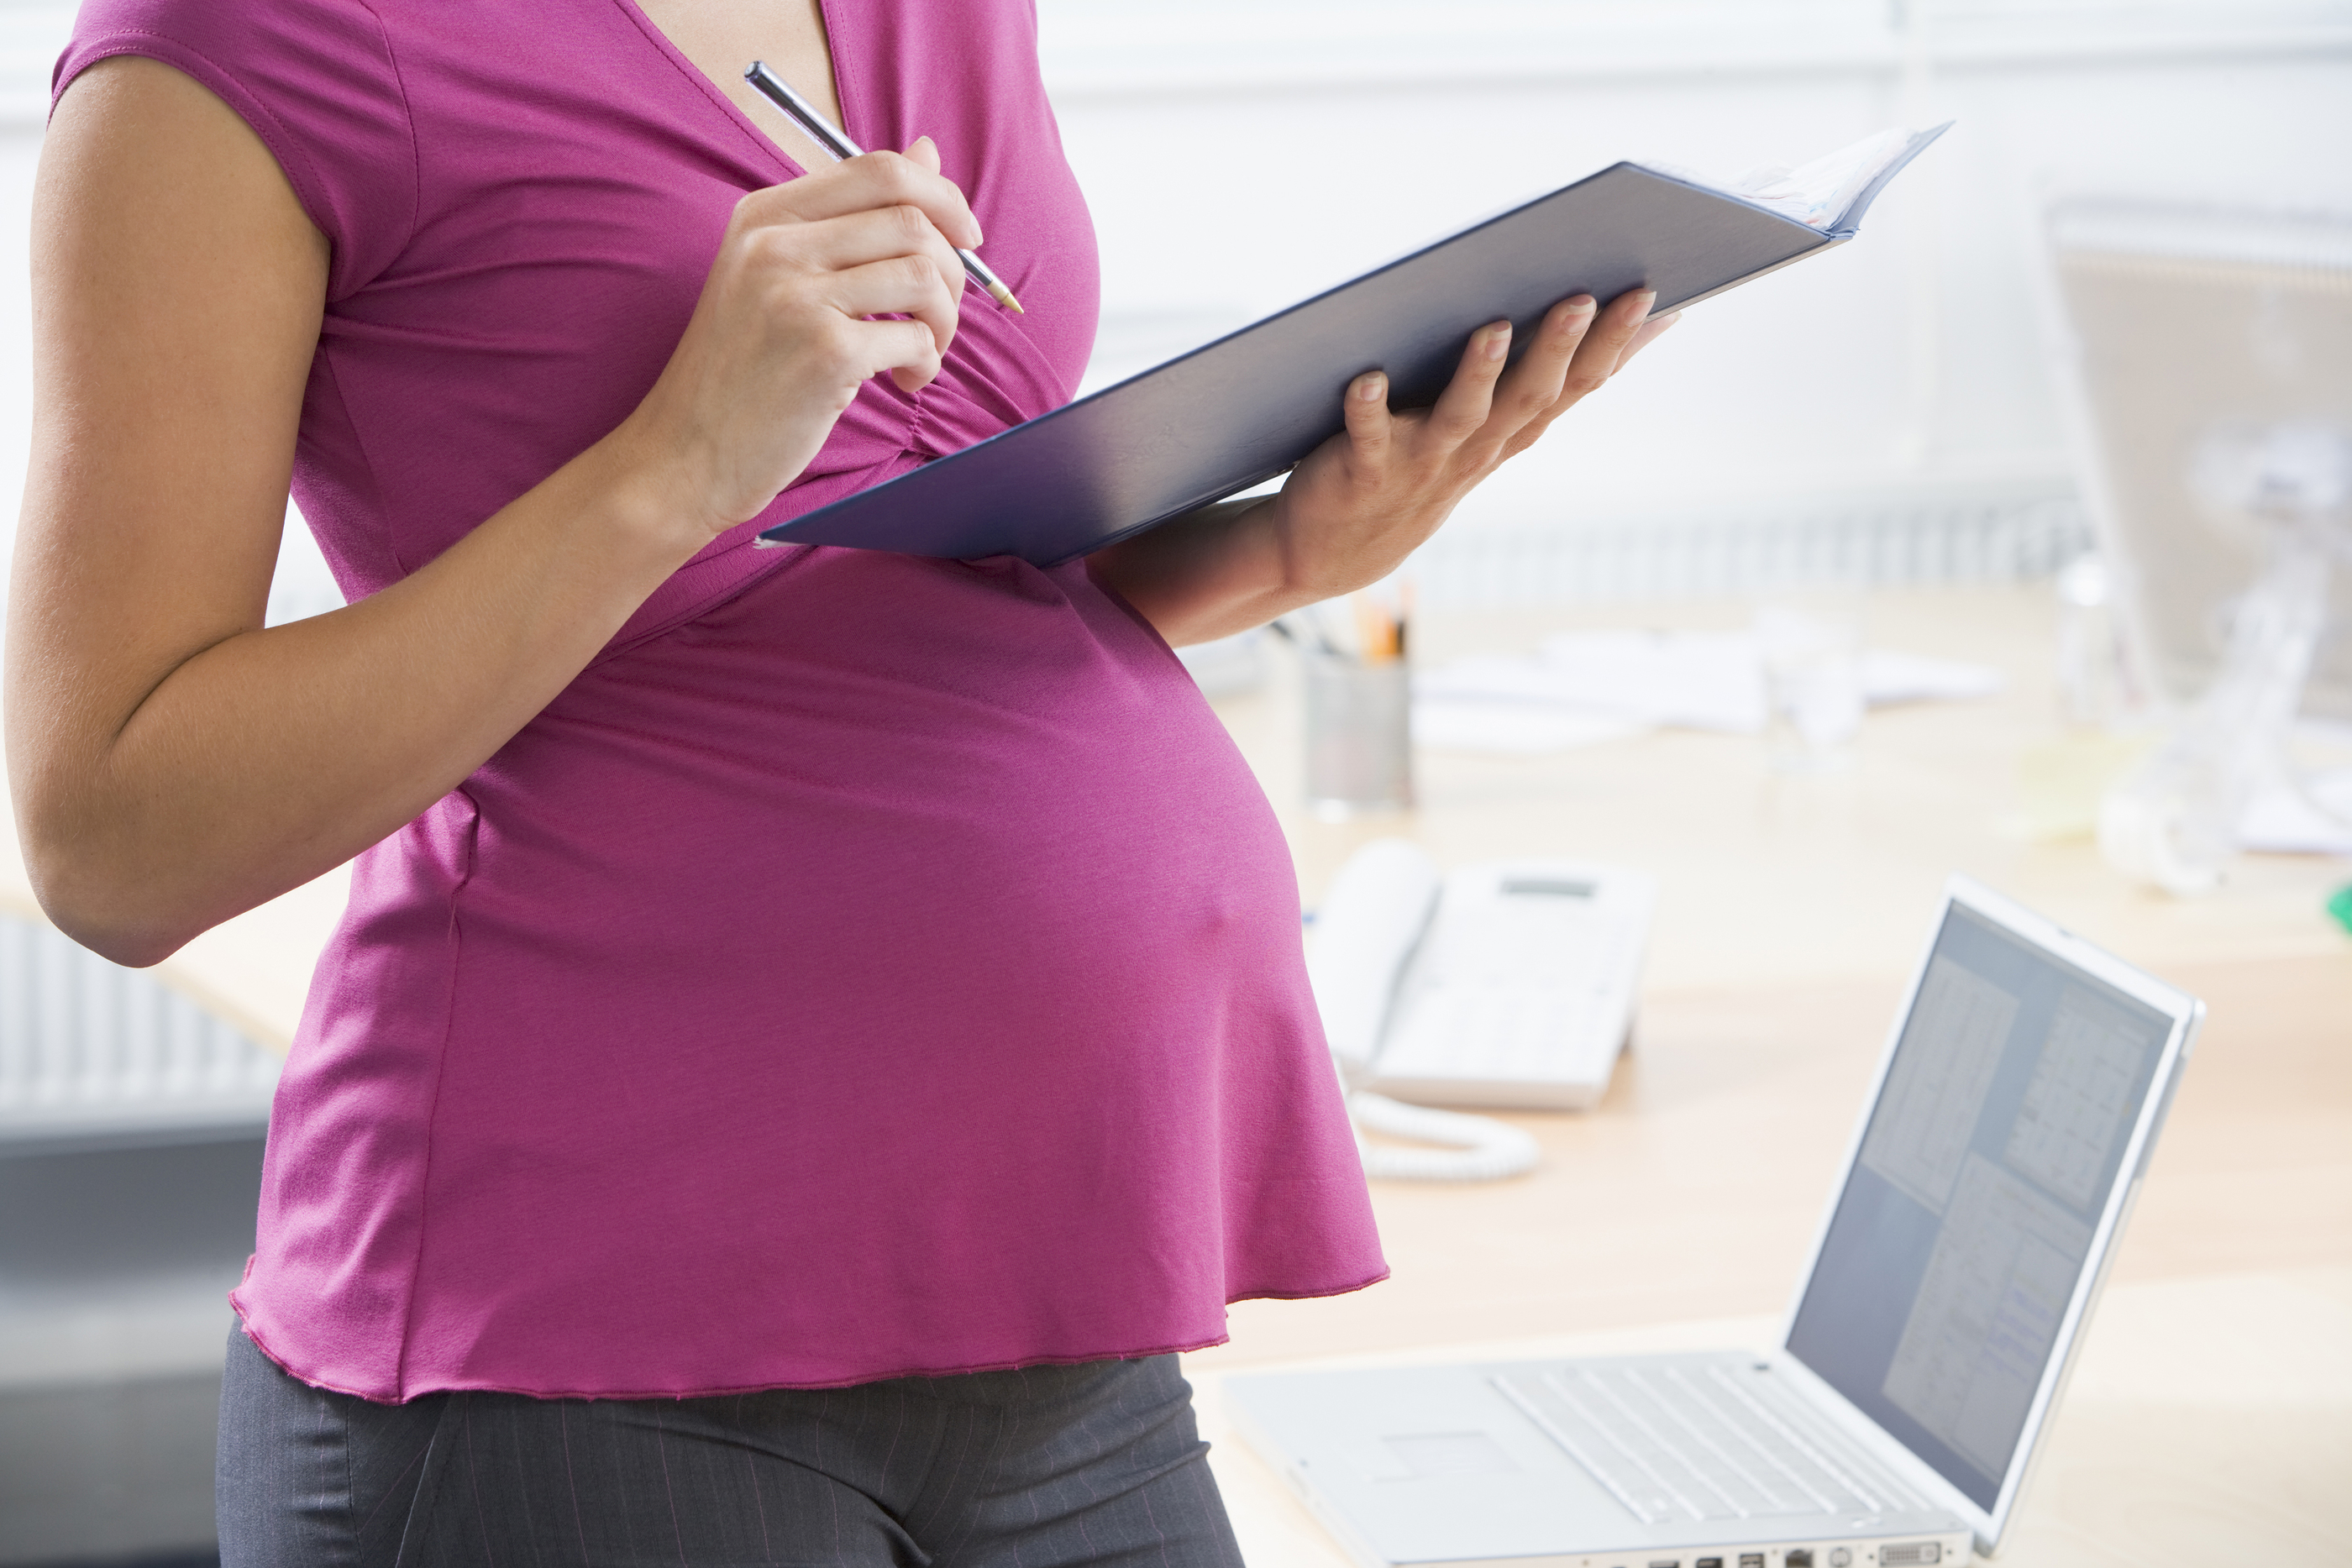 平機會提醒所有僱主絕對不可在僱傭範疇內對僱員作出違法懷孕歧視。